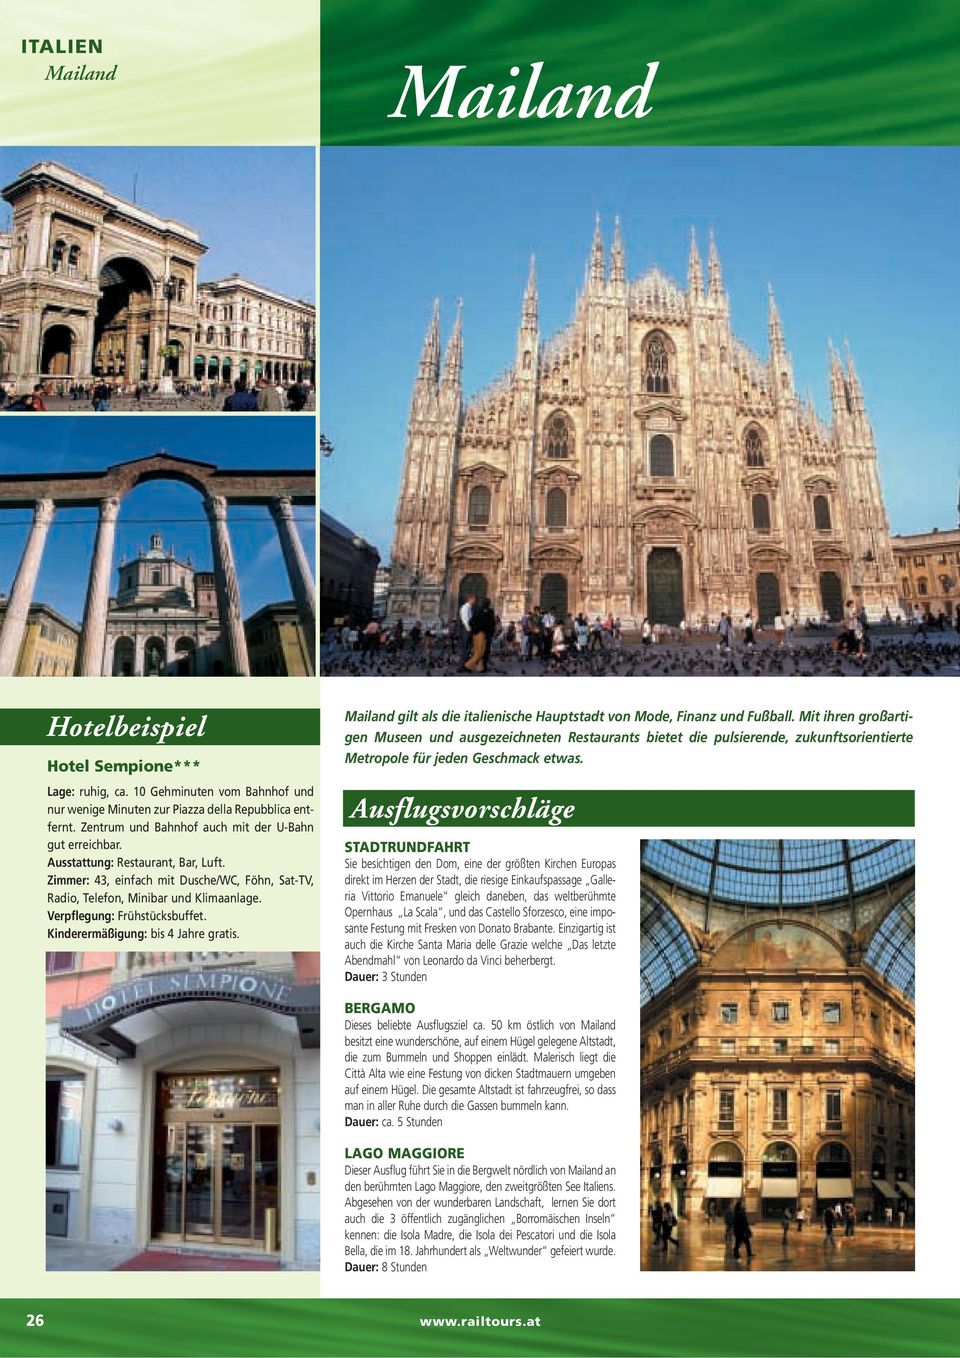 Mailand gilt als die italienische Hauptstadt von Mode, Finanz und Fußball.